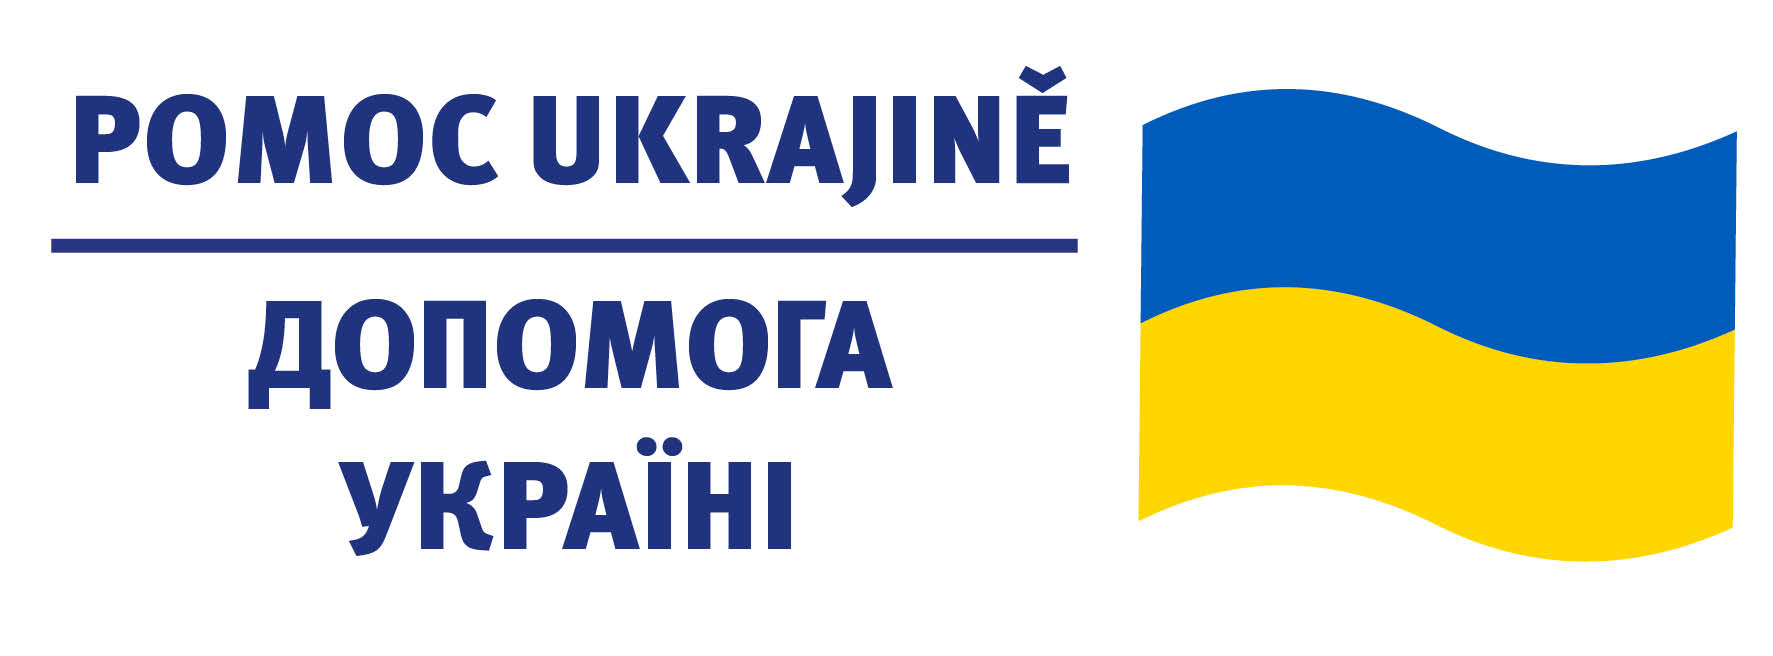 Aktuality k situaci na Ukrajině